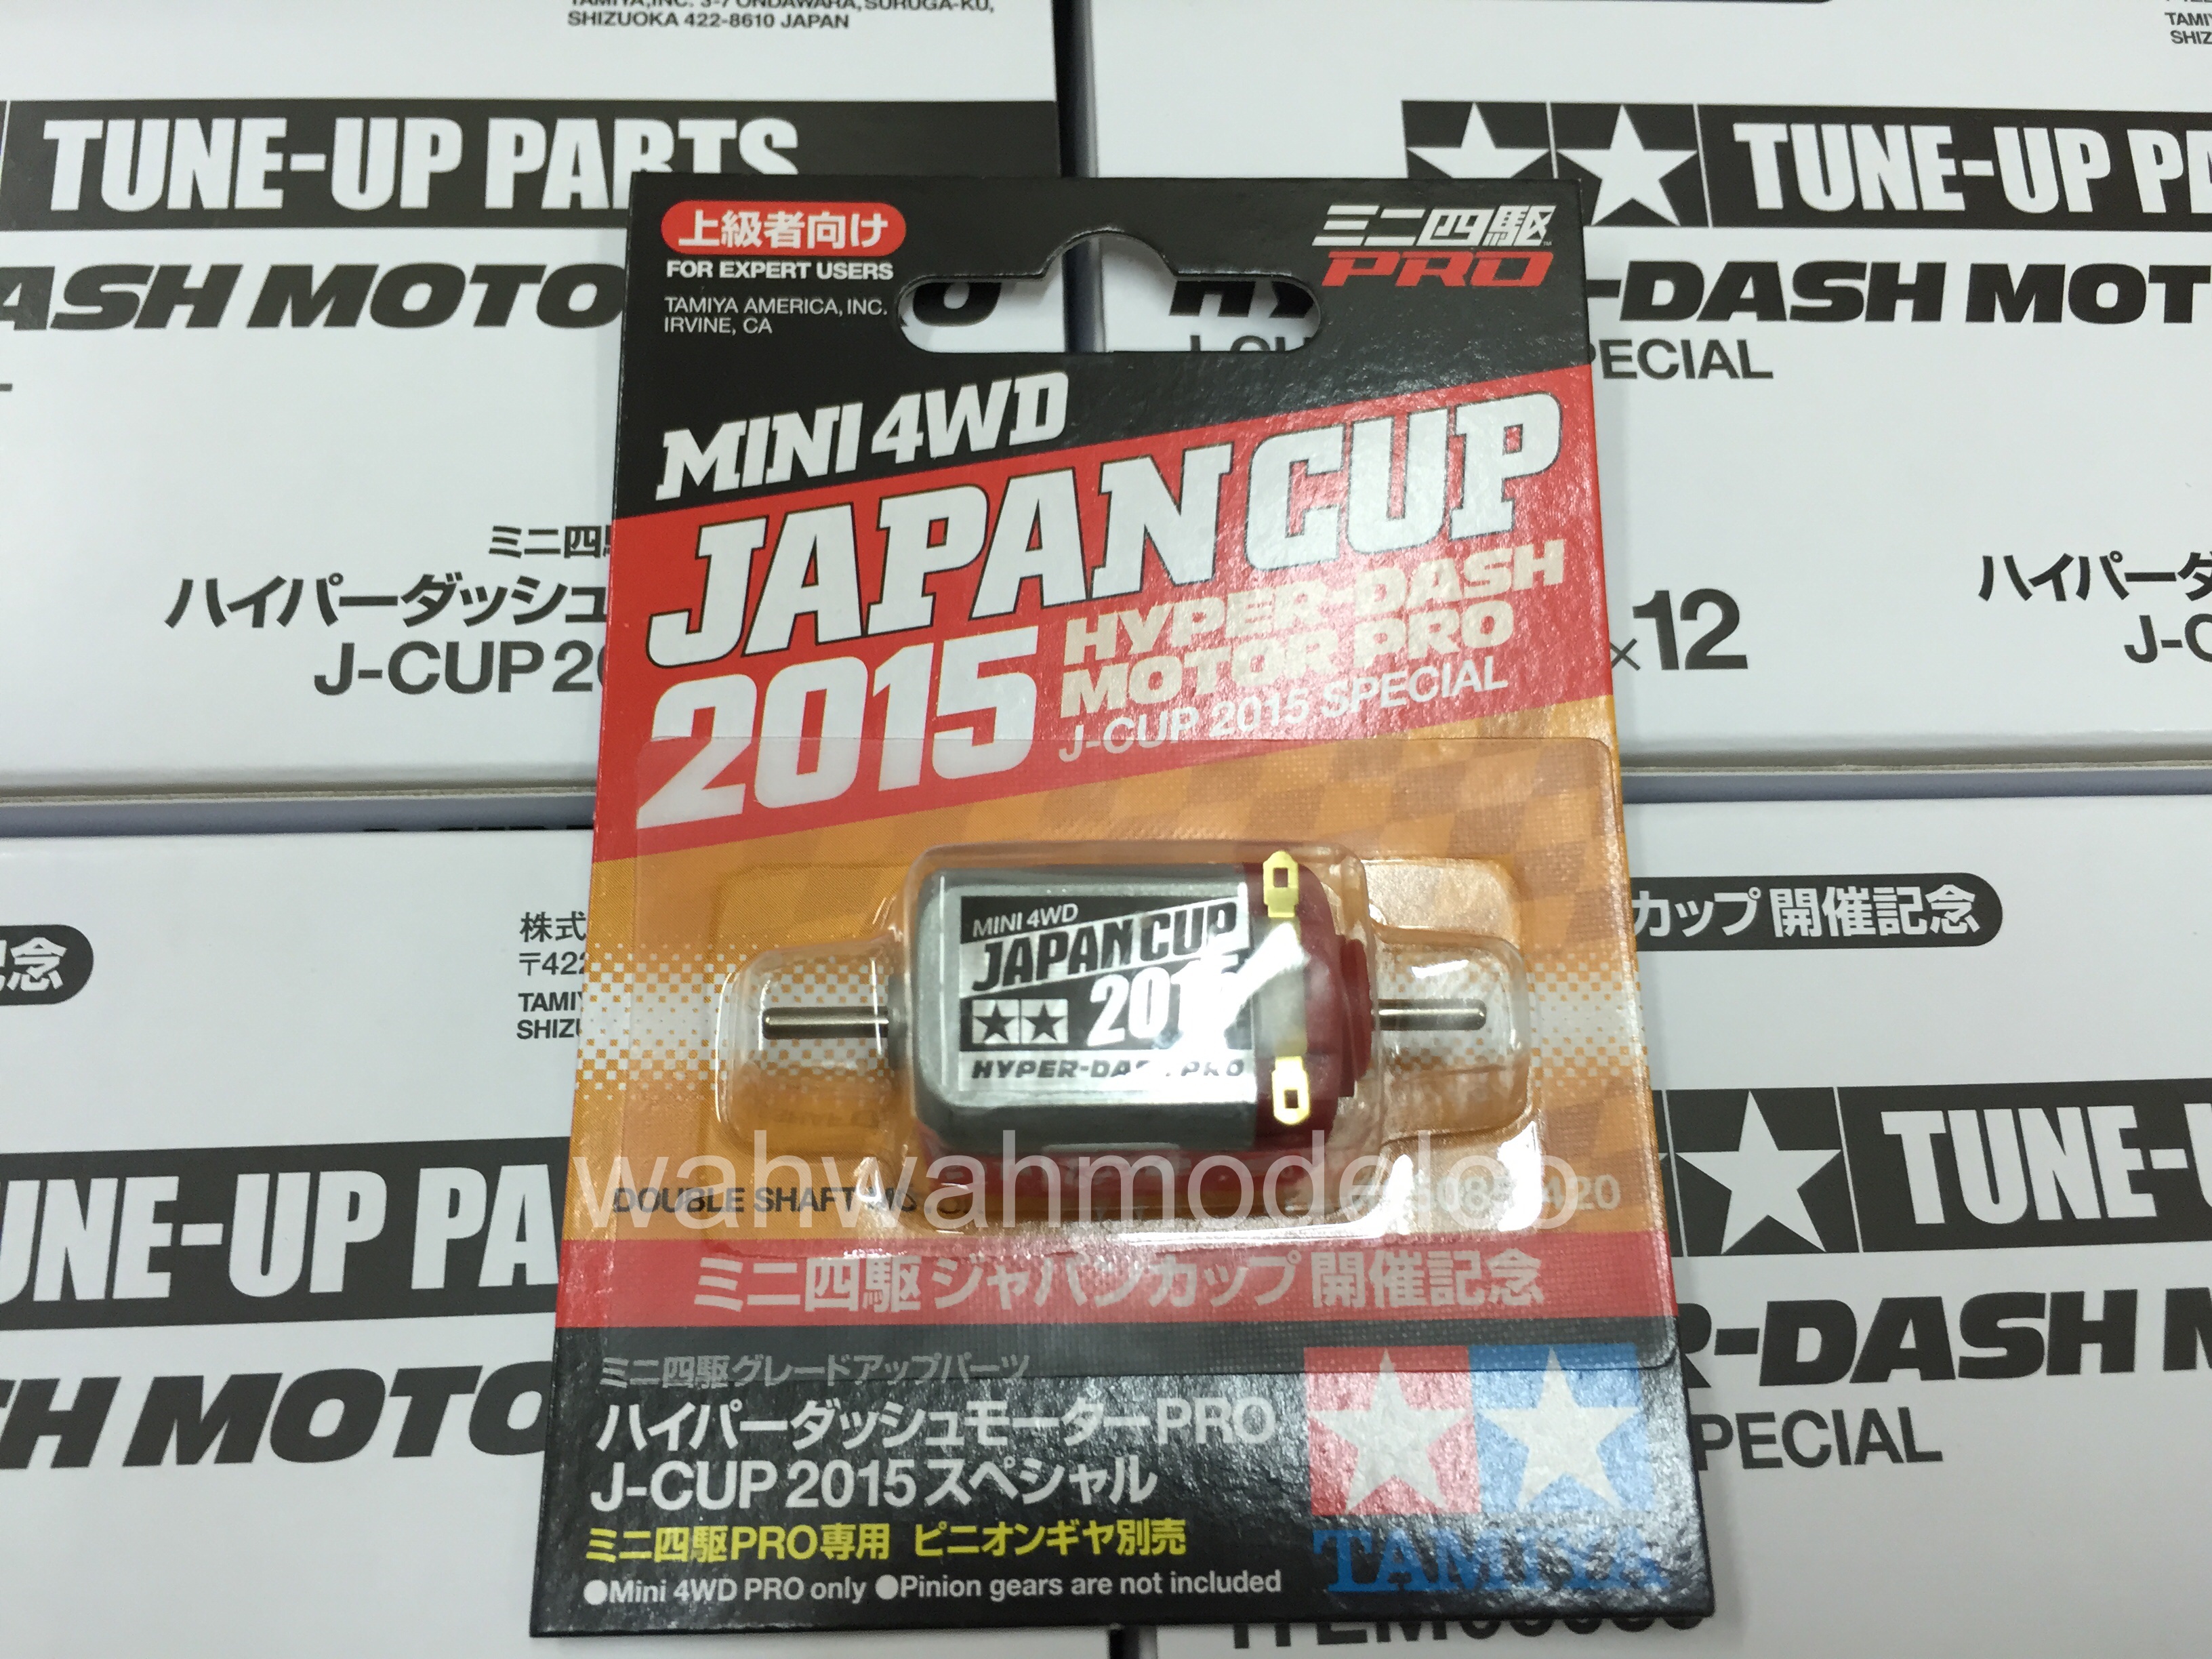 Tamiya Jr Hyper Dash Motor Pro J Cup 15 Special